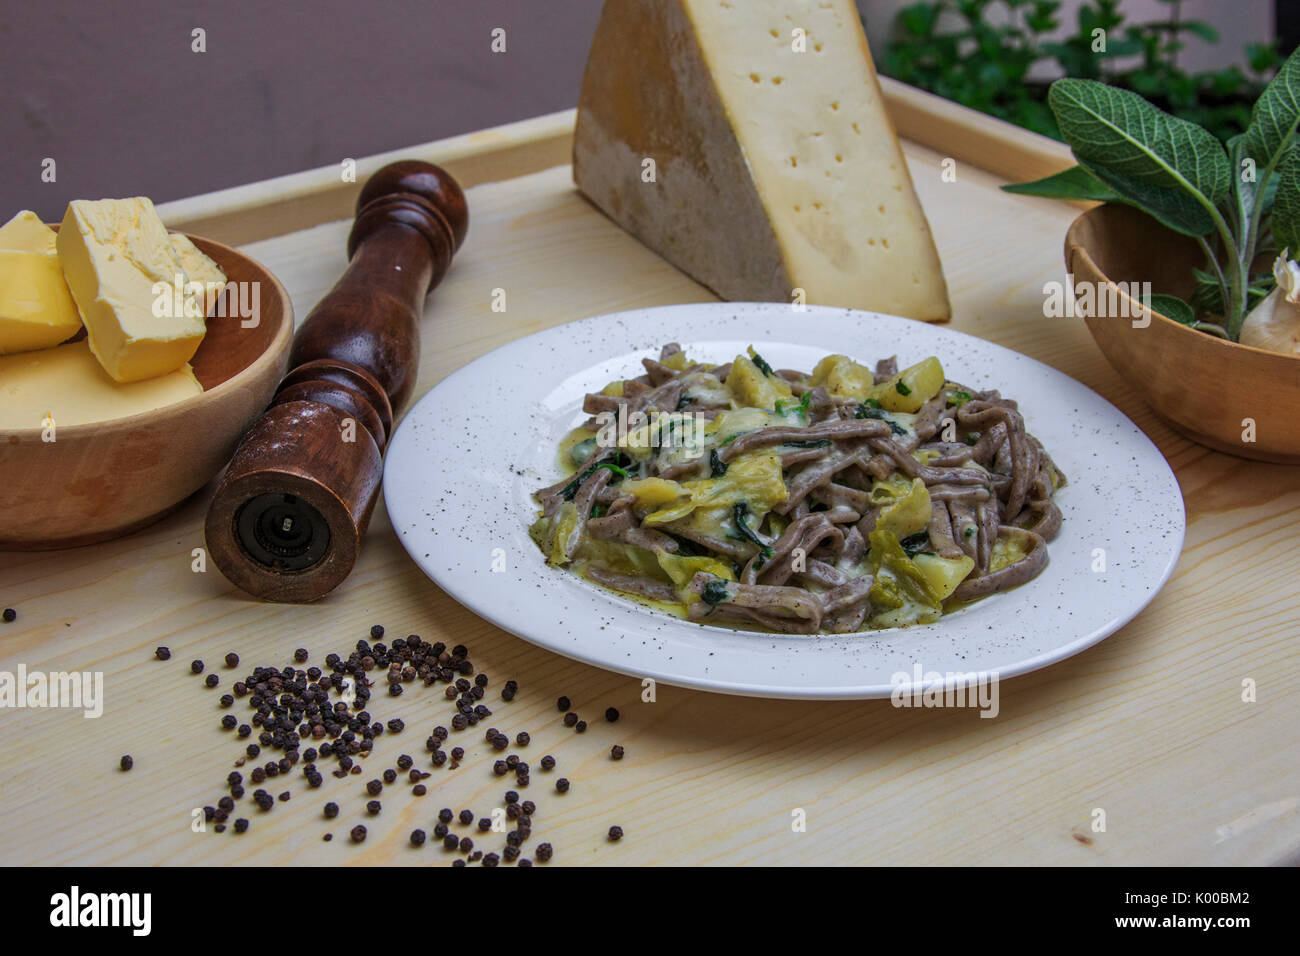 Les Pizzoccheri sont le premier plat principal de la cuisine de la Valteline. La Lombardie. L'Italie. L'Europe Banque D'Images